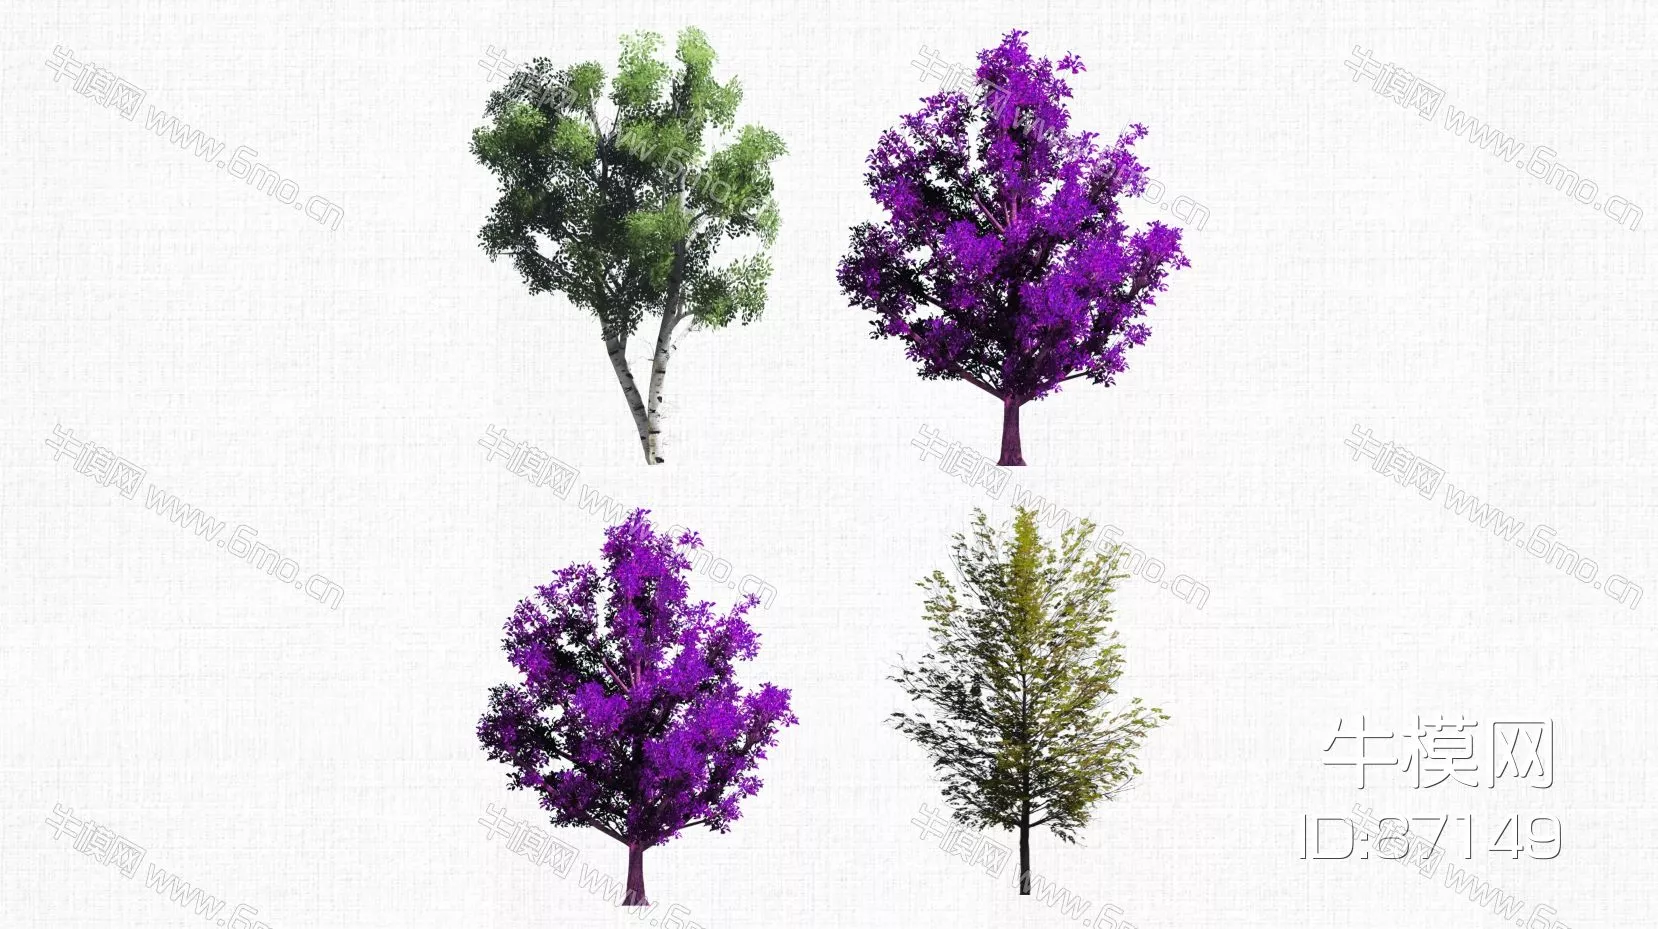 MODERN TREE - SKETCHUP 3D MODEL - ENSCAPE - 87149